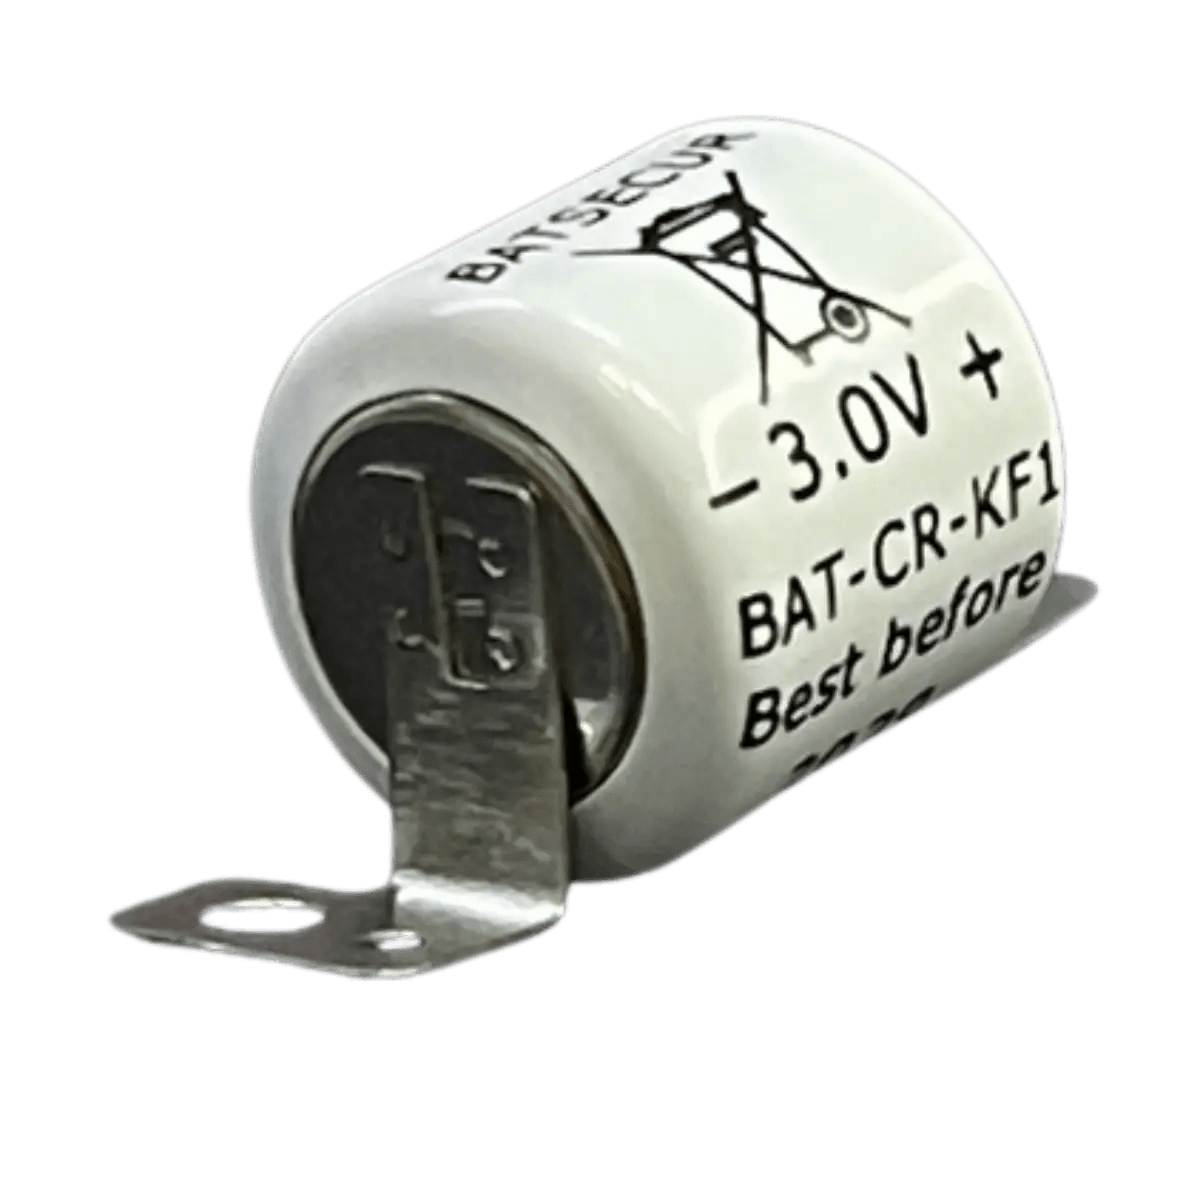 Batterie BATT-CR/KF1 pour alarme de sécurité Pyronix 